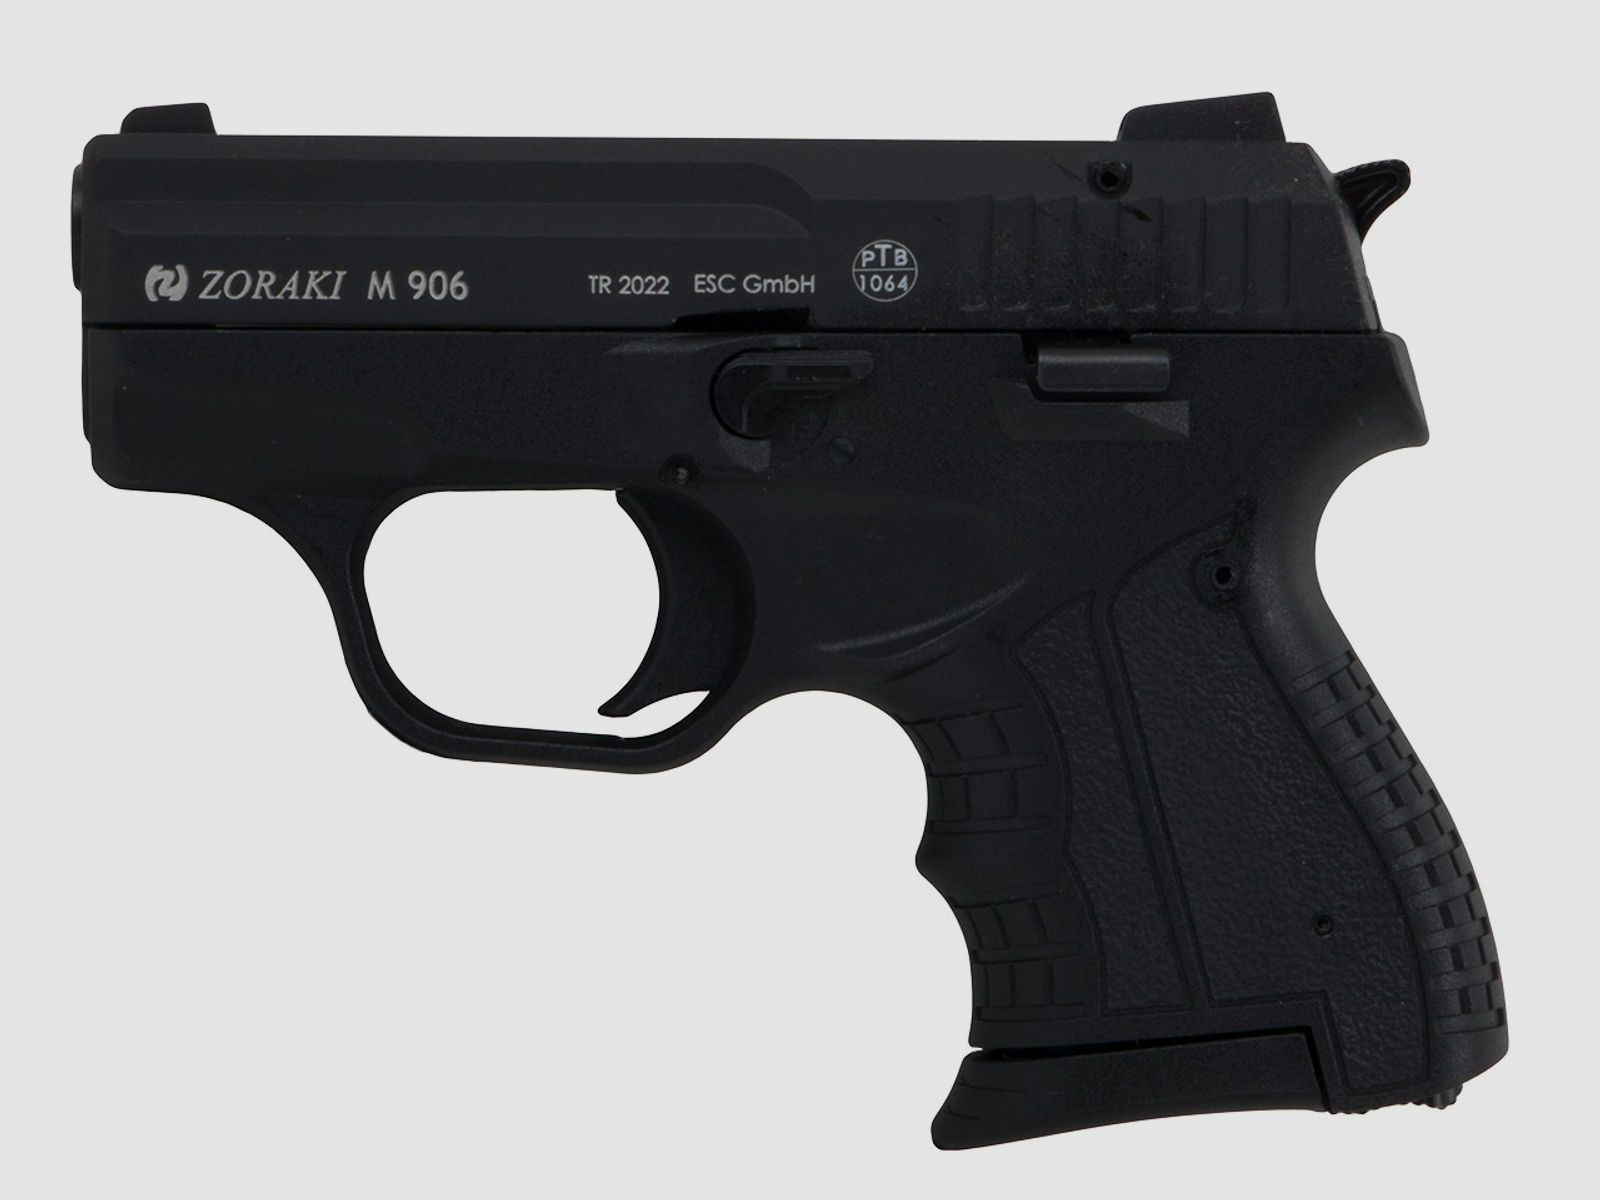 Schreckschuss Pistole Zoraki M 906 schwarz PTB 1064 Kaliber 9 mm P.A.K. (P18)